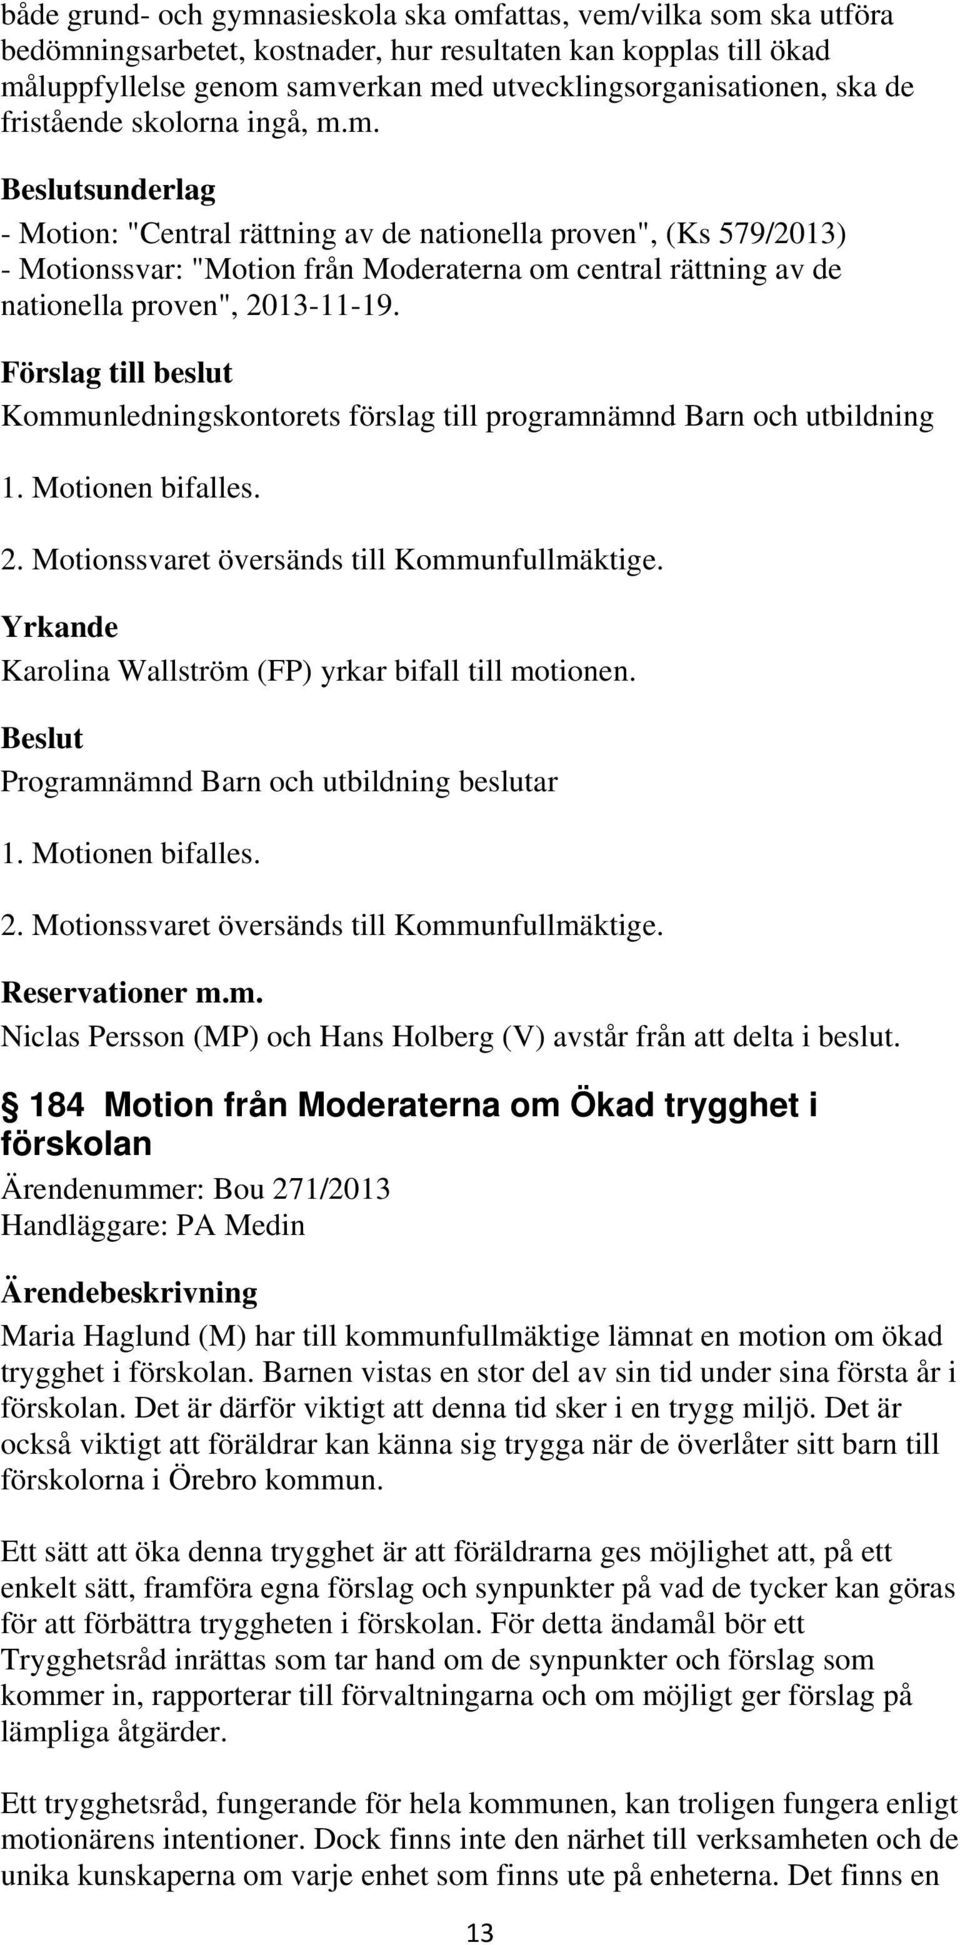 m. Beslutsunderlag - Motion: "Central rättning av de nationella proven", (Ks 579/2013) - Motionssvar: "Motion från Moderaterna om central rättning av de nationella proven", 2013-11-19.